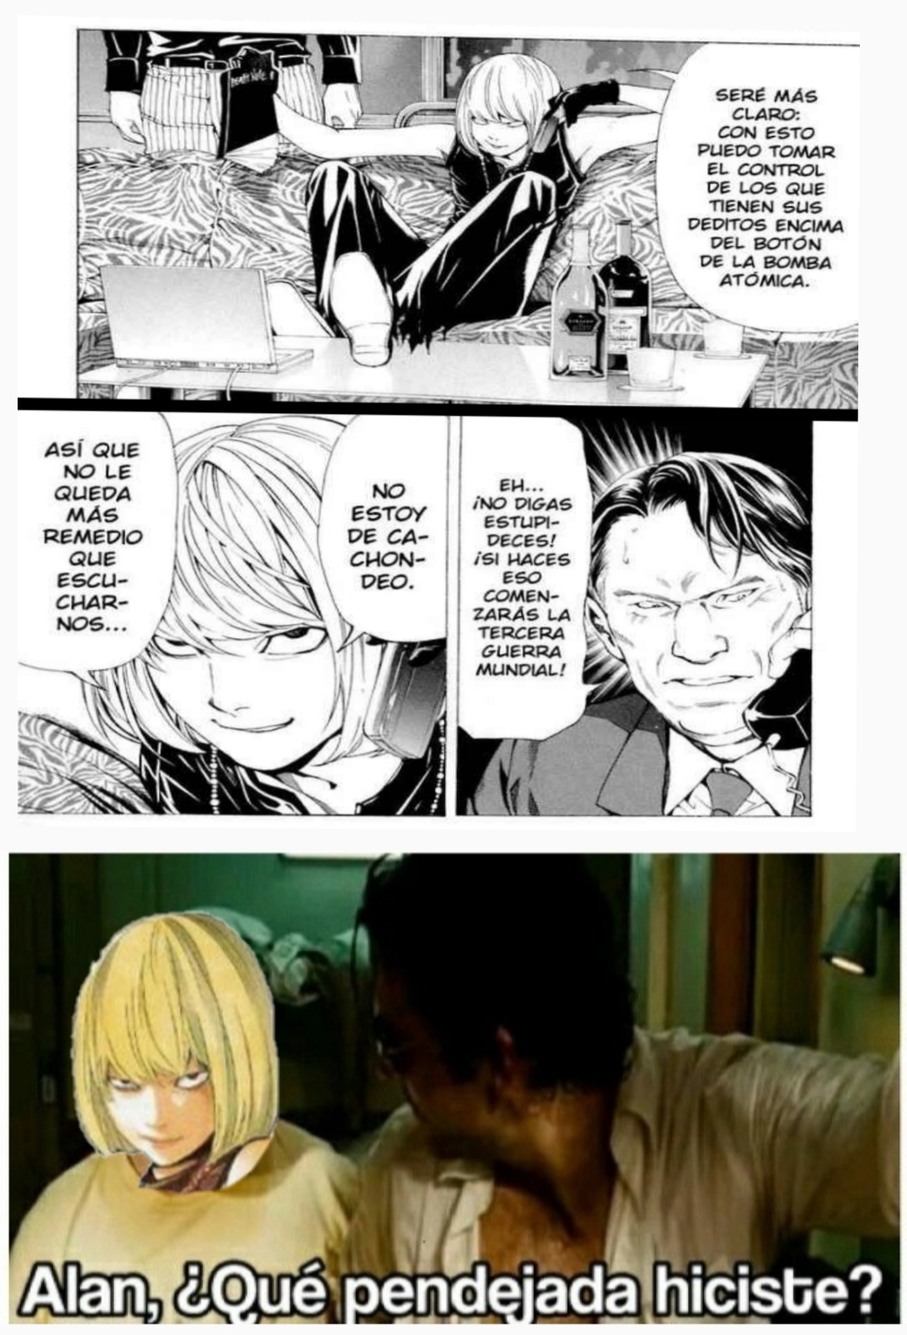 Según el manga de Death Note, el es el responsable de todo - meme